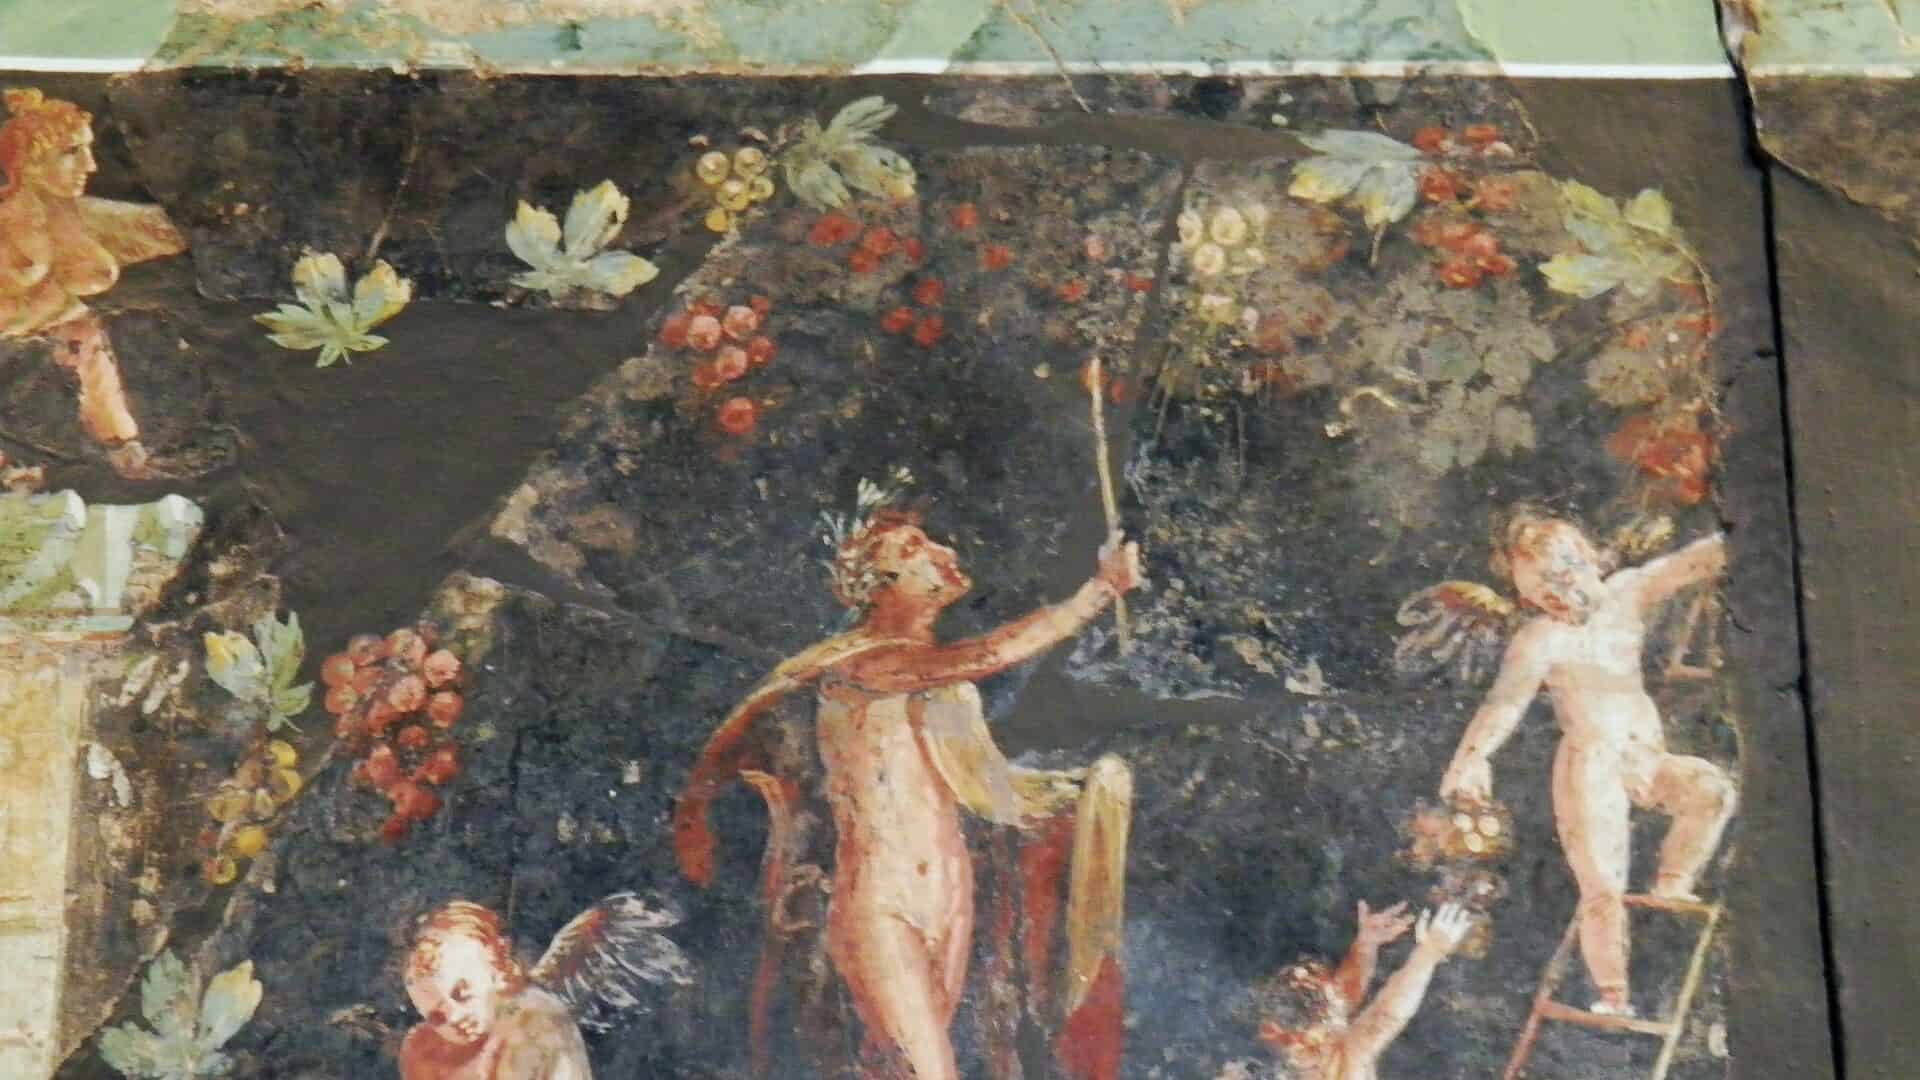 Fresk z ruin rzymskiej willi w poludniowych Włoszech, scena dionizyjska